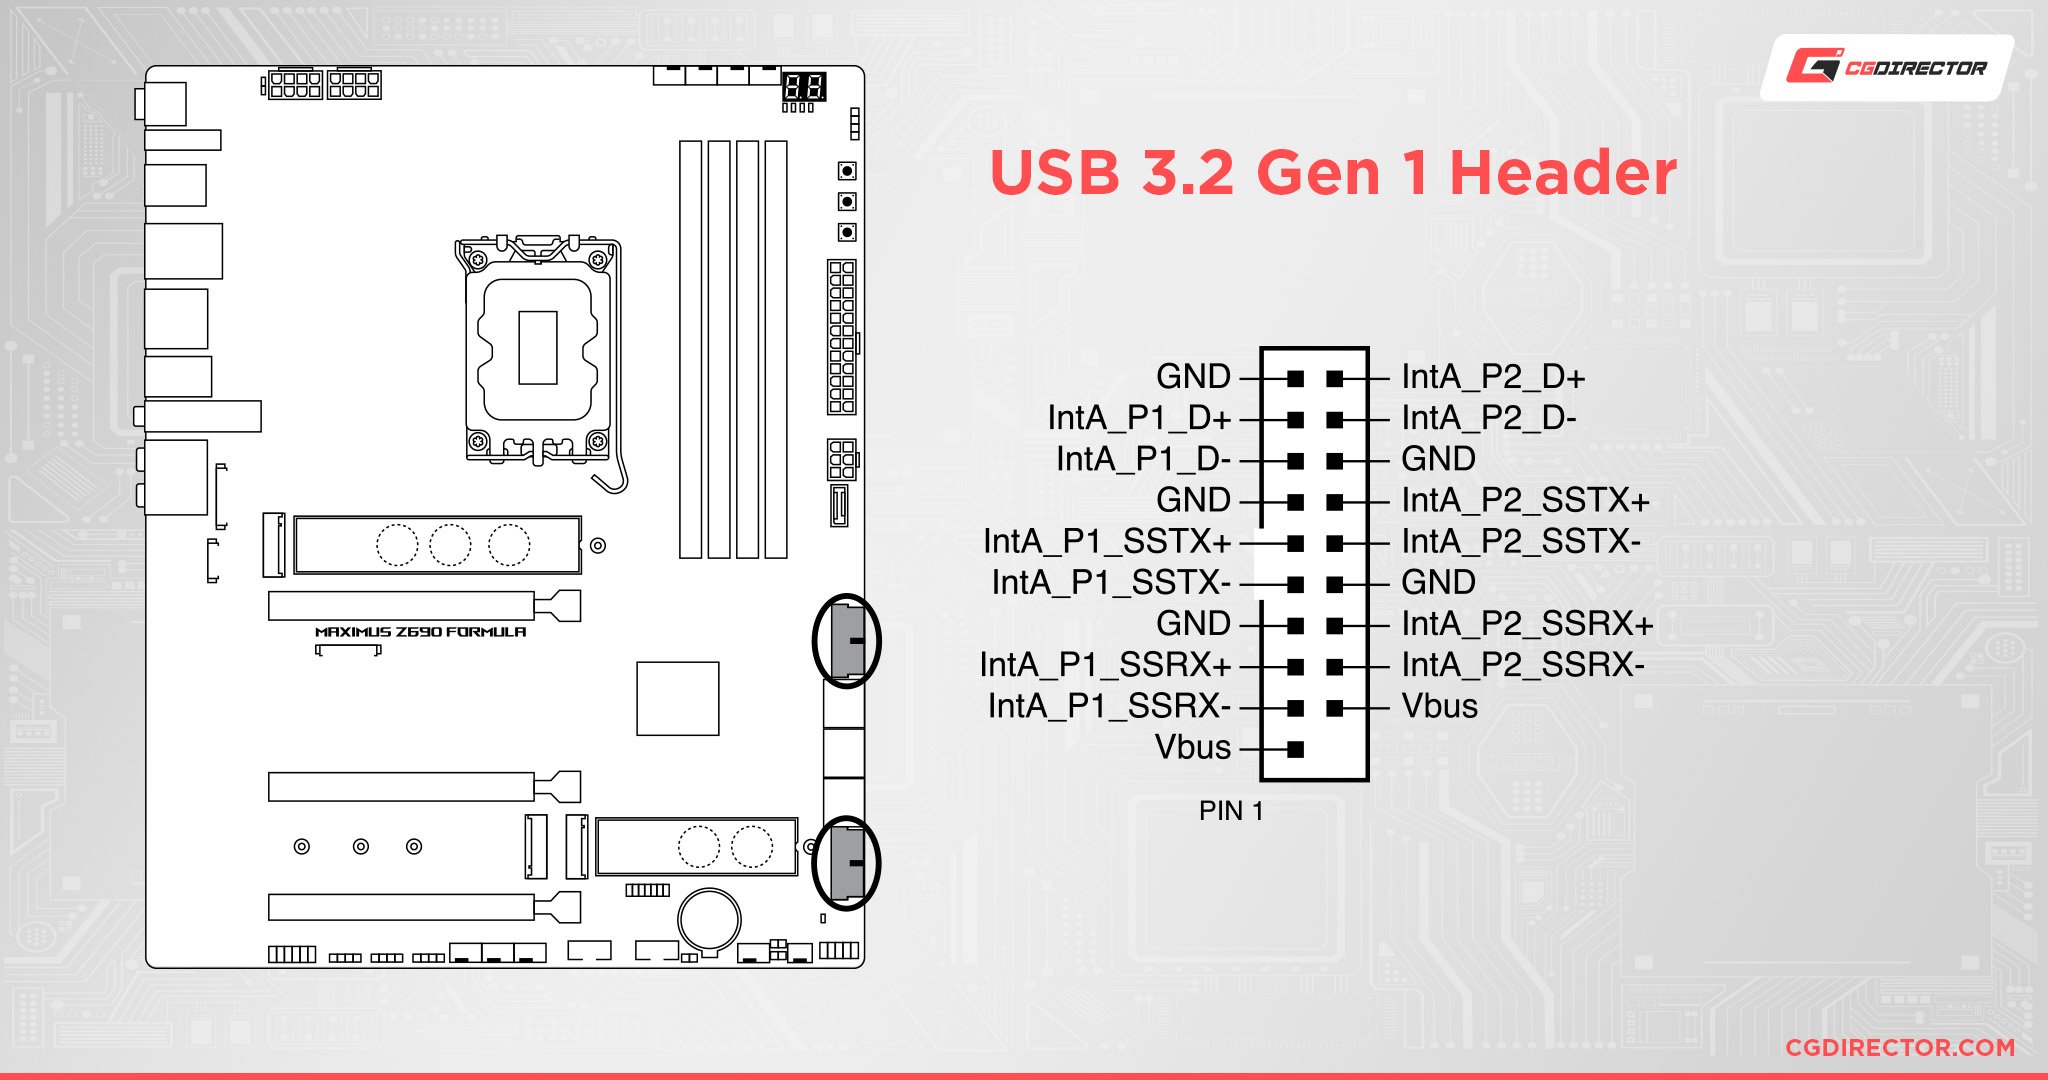 USB 3.2 Gen 1 header